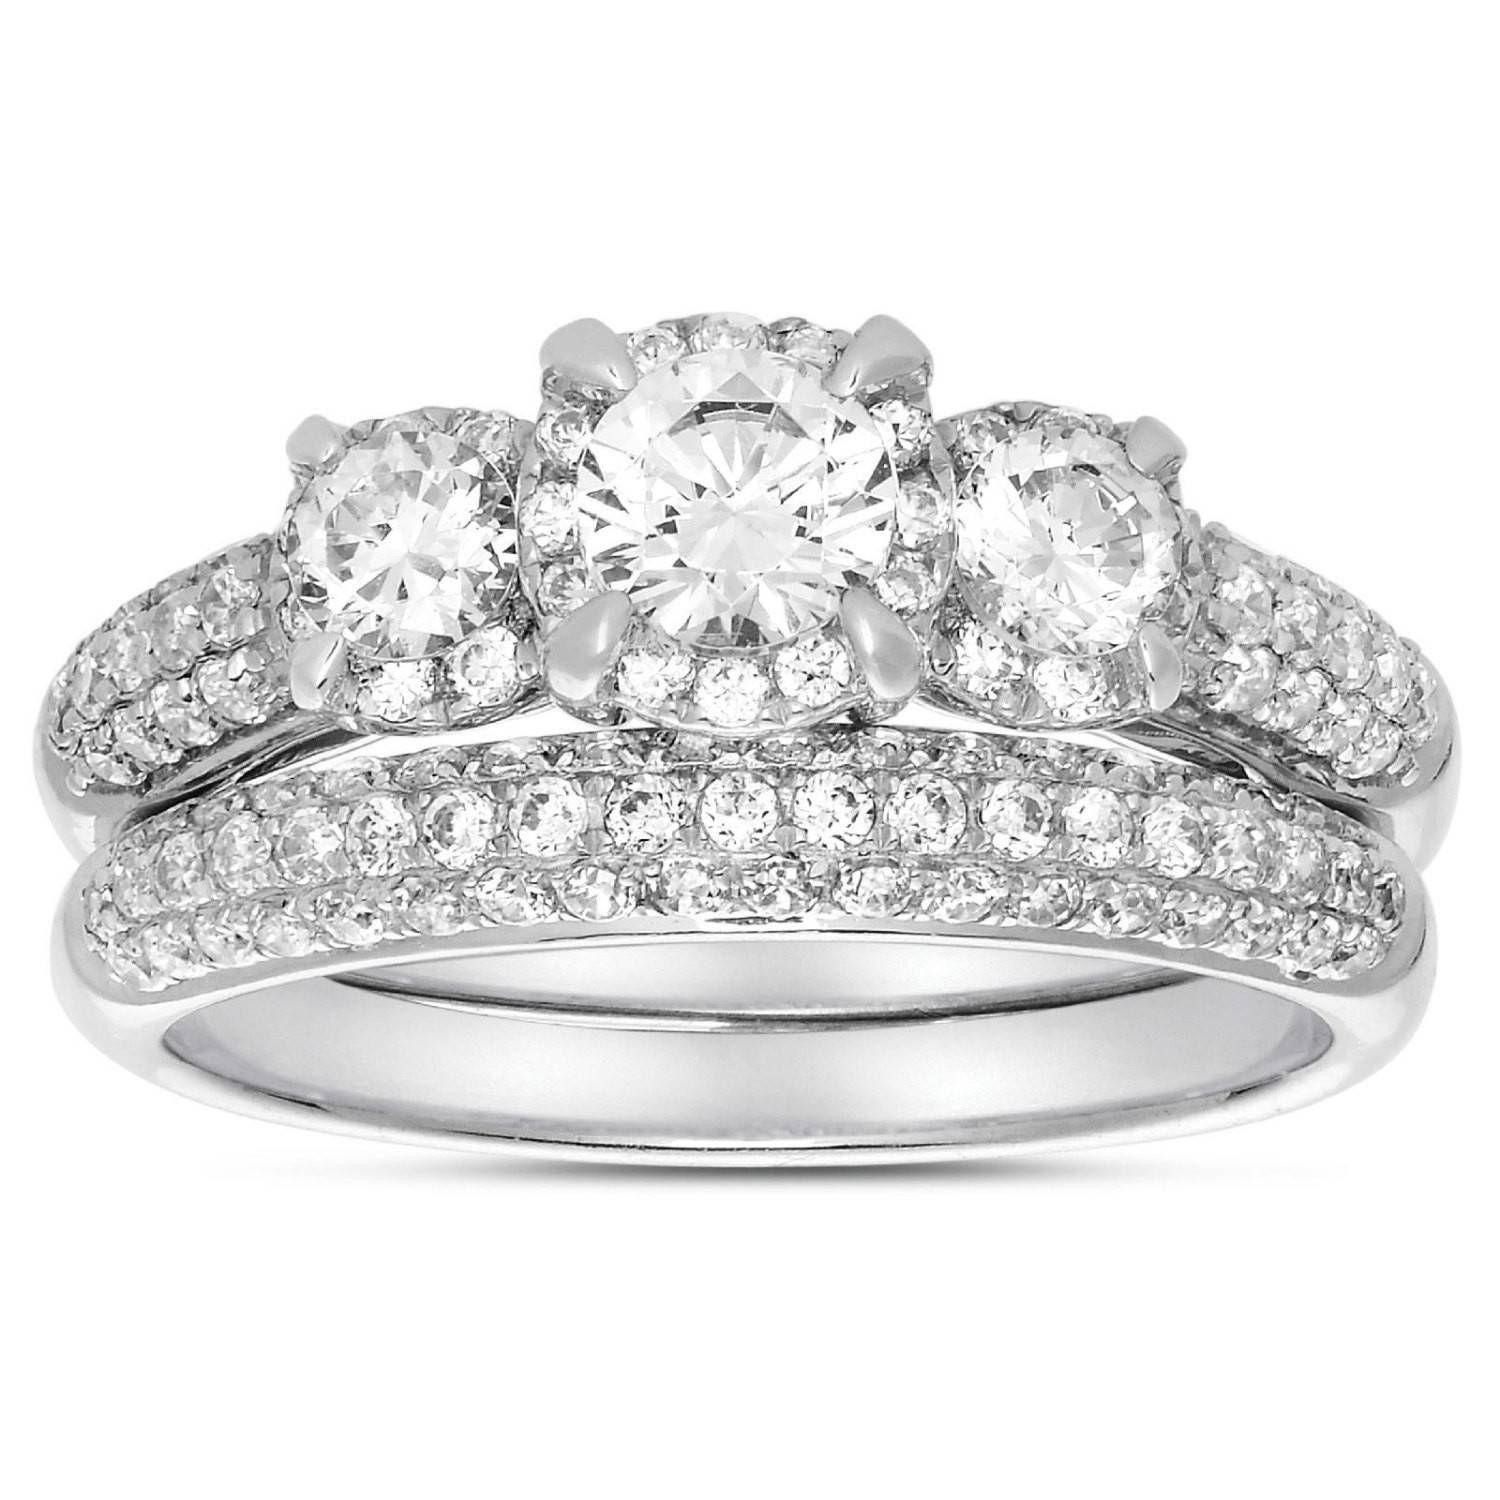 2 Carat Three Stone Trilogy Round Diamond Wedding Ring Set In Regarding White Gold Trilogy Engagement Rings (View 8 of 15)